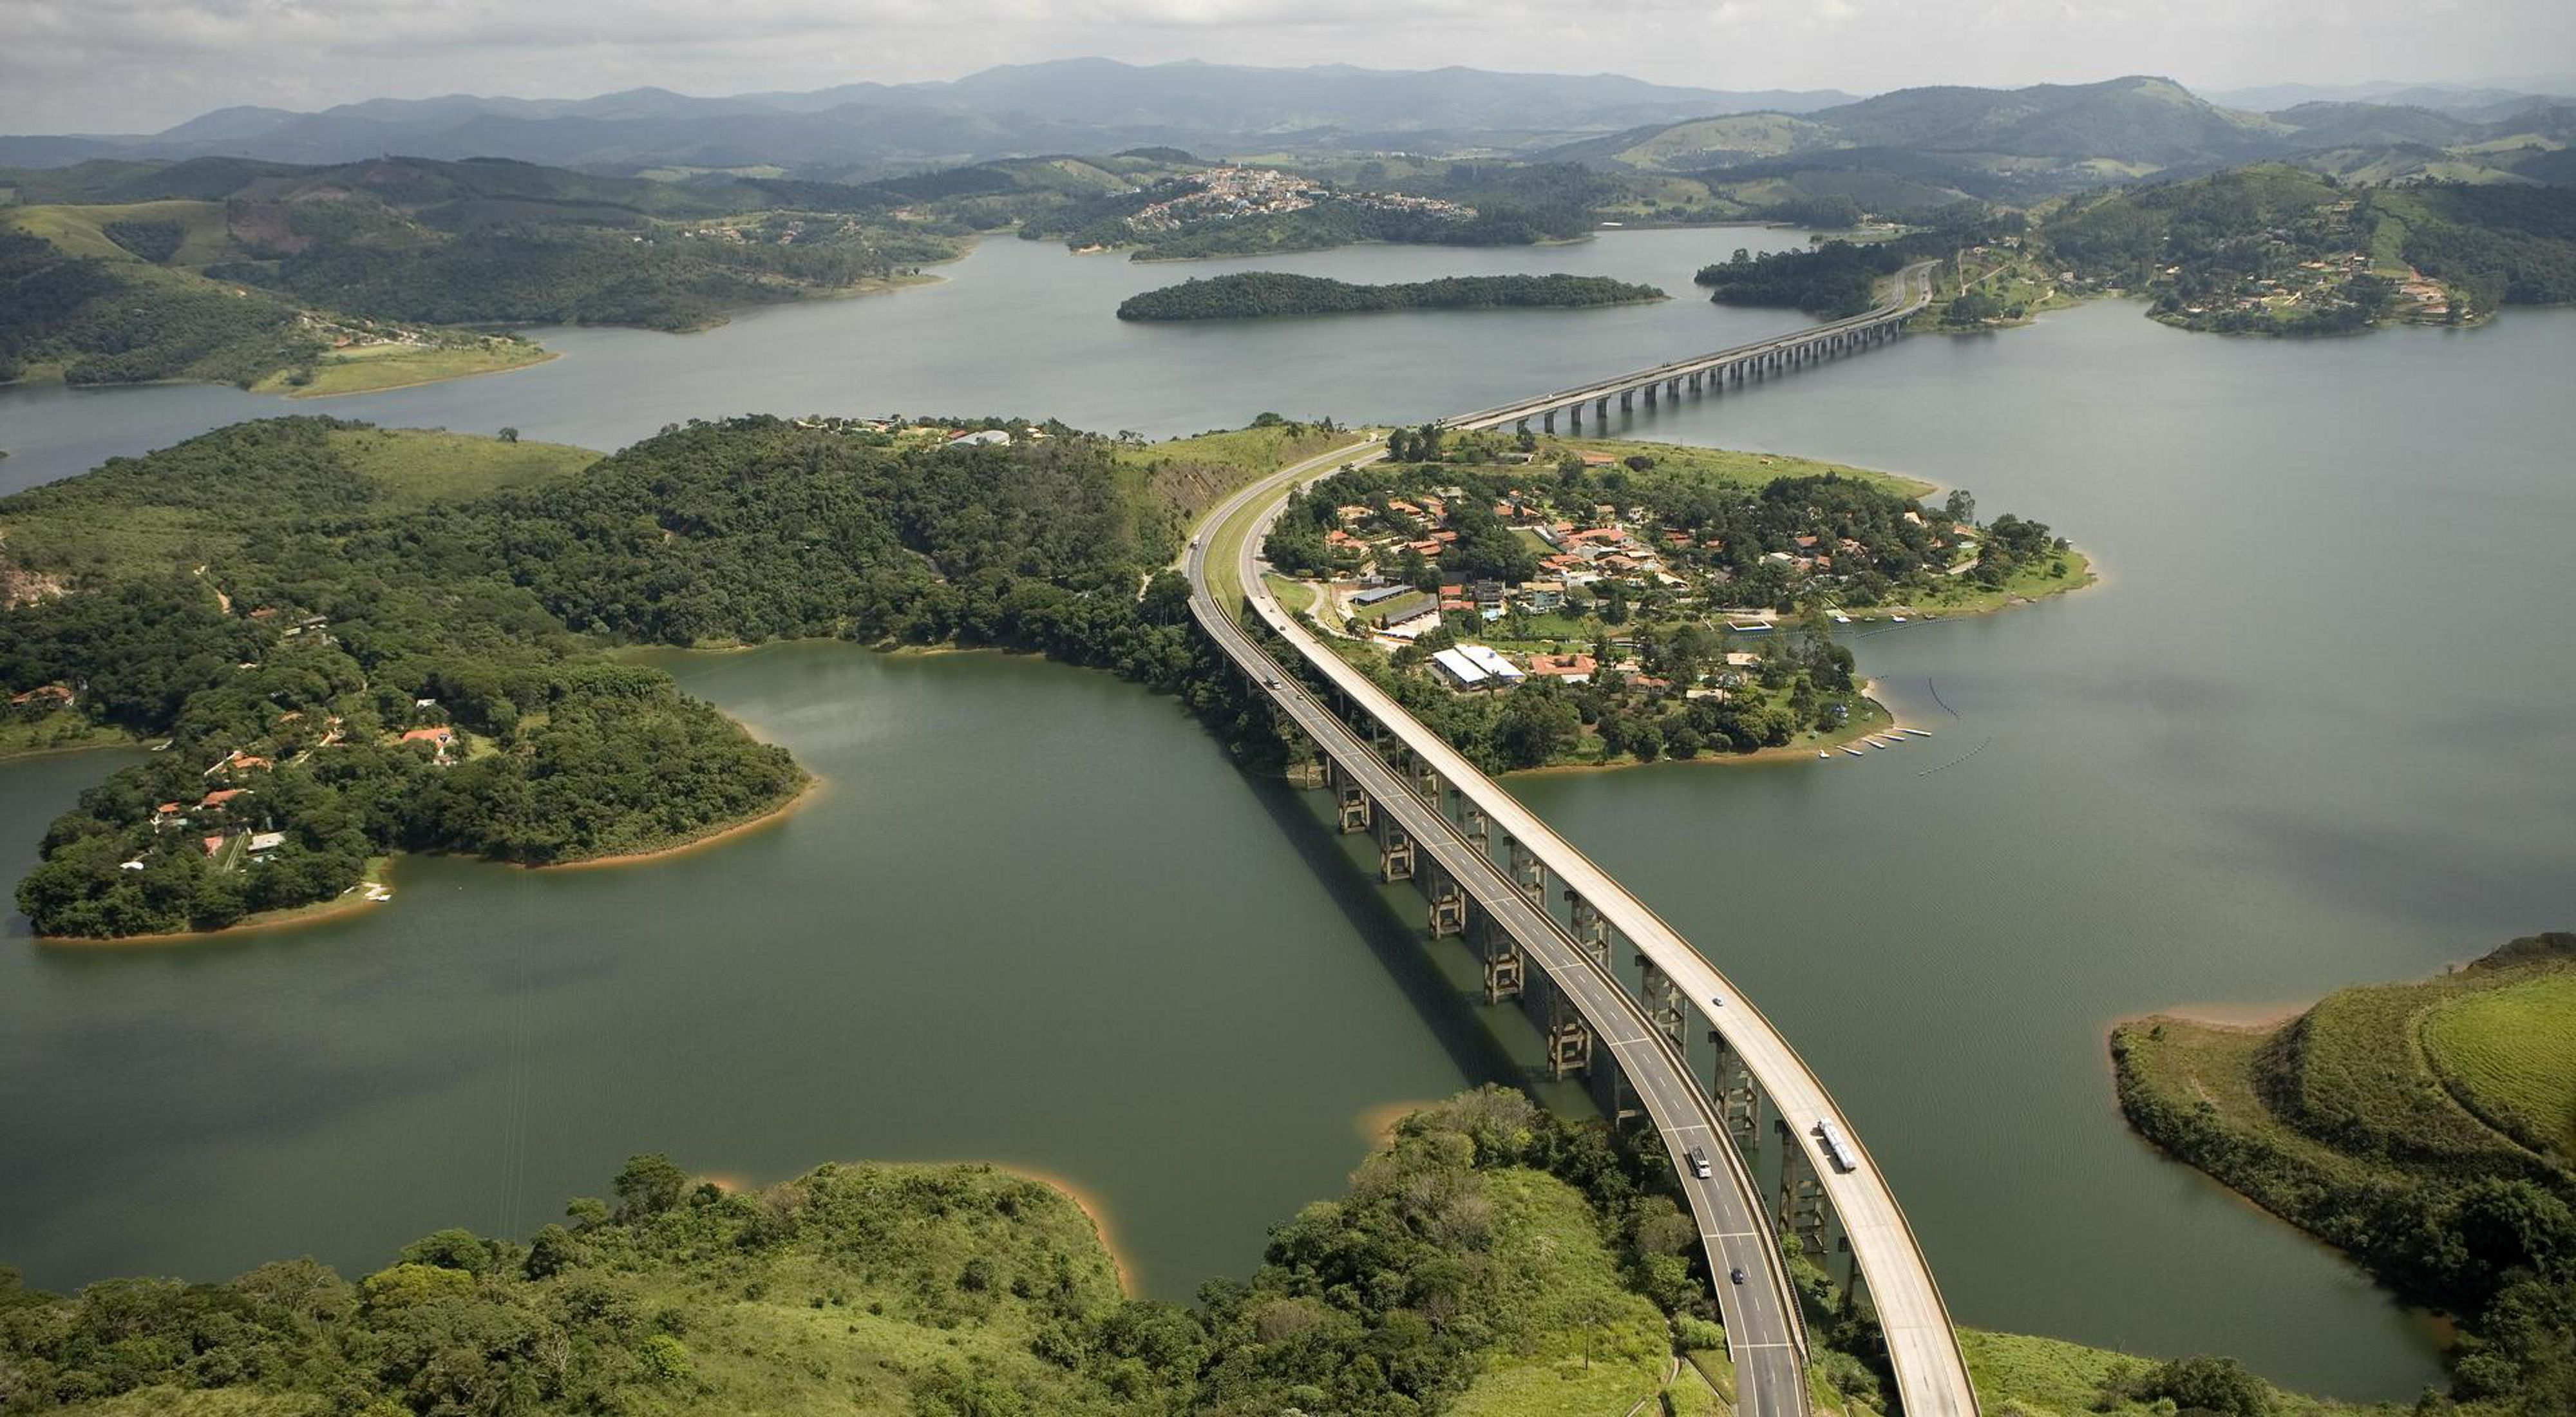 Vista aérea de uma rodovia de várias faixas que atravessa o reservatório de Atibaina, próximo à cidade de Nazaré Paulista, Brasil. O reservatório faz parte do sistema Cantareira (o maior sistema de ab